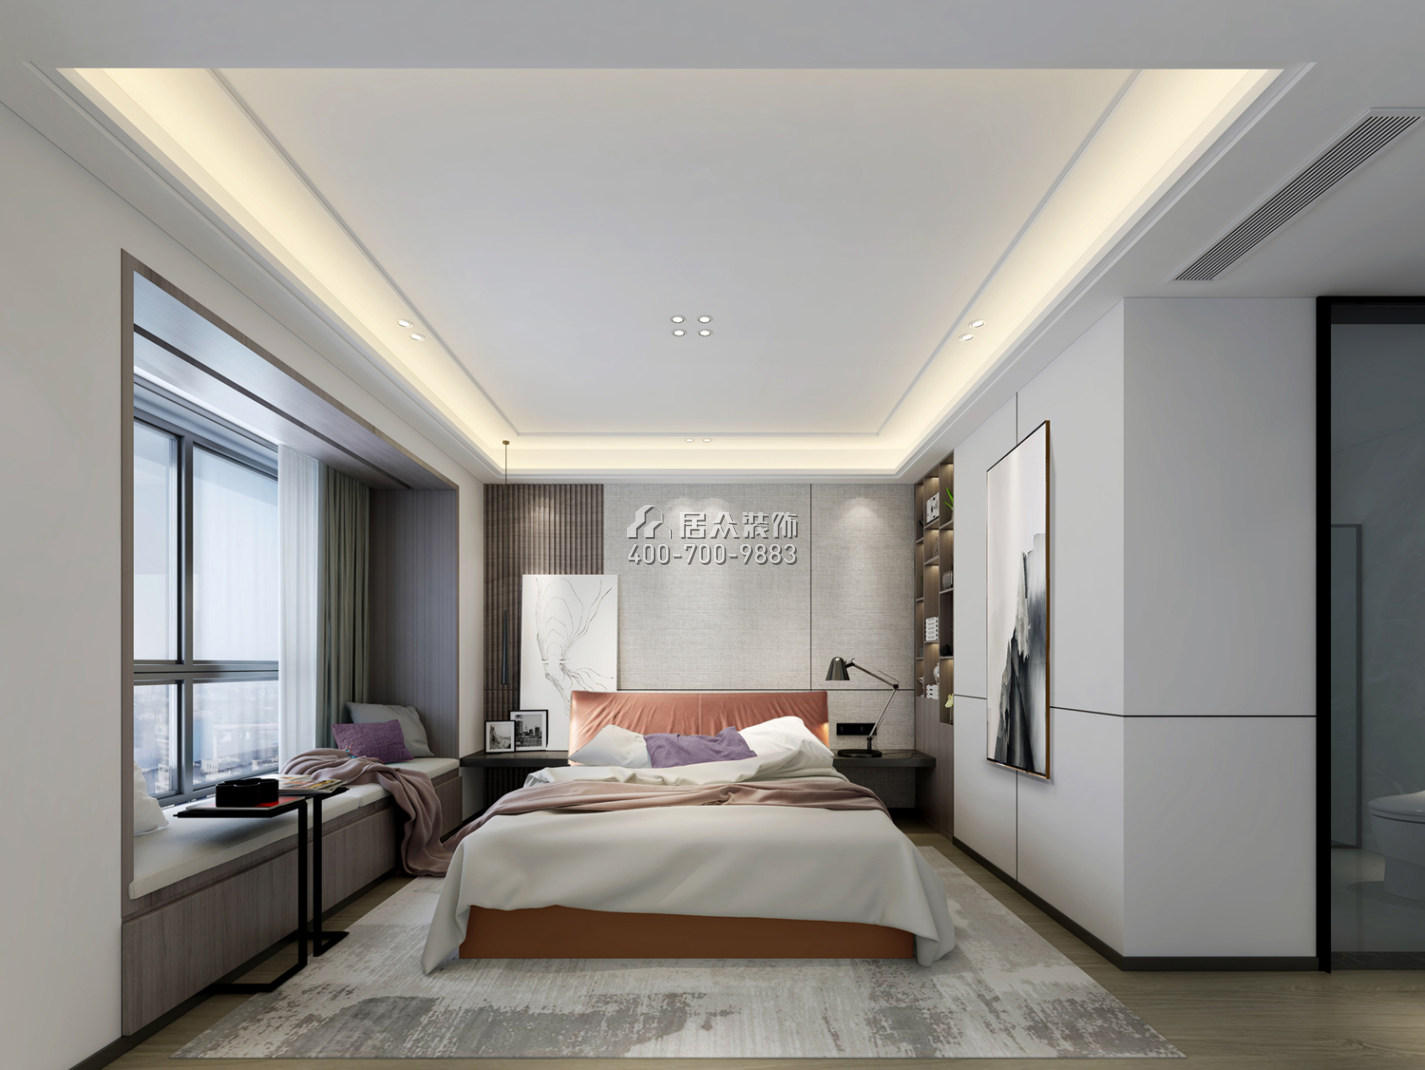 壹方商业中心二期342平方米中式风格平层户型卧室kok电竞平台效果图